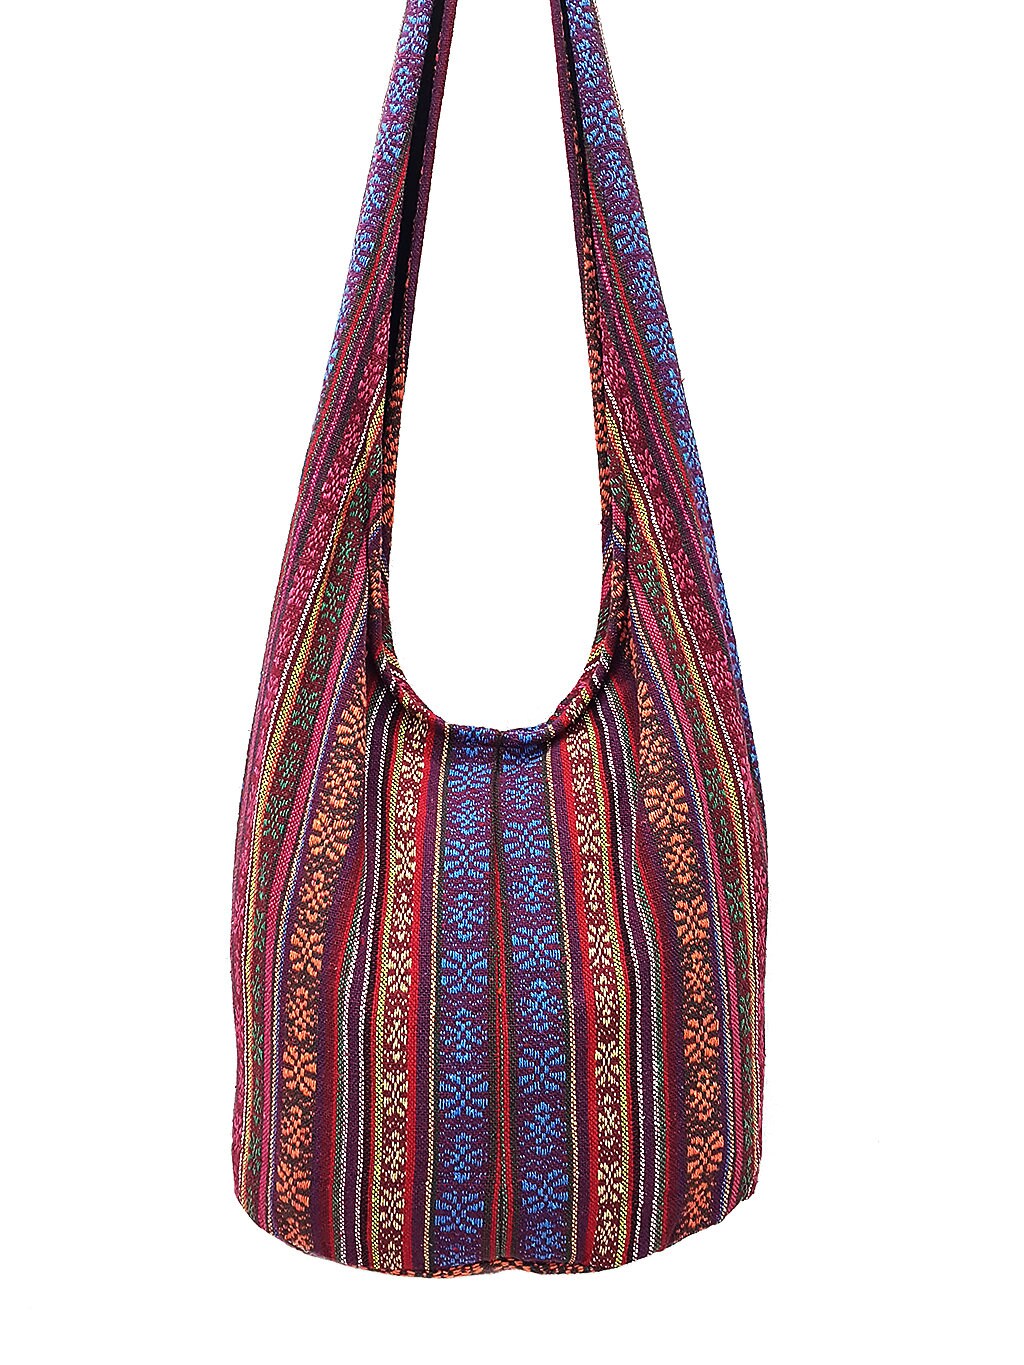 Woven Cotton Bag Hippie Hobo Bag Boho Bag Shoulder Bag Sling | Etsy